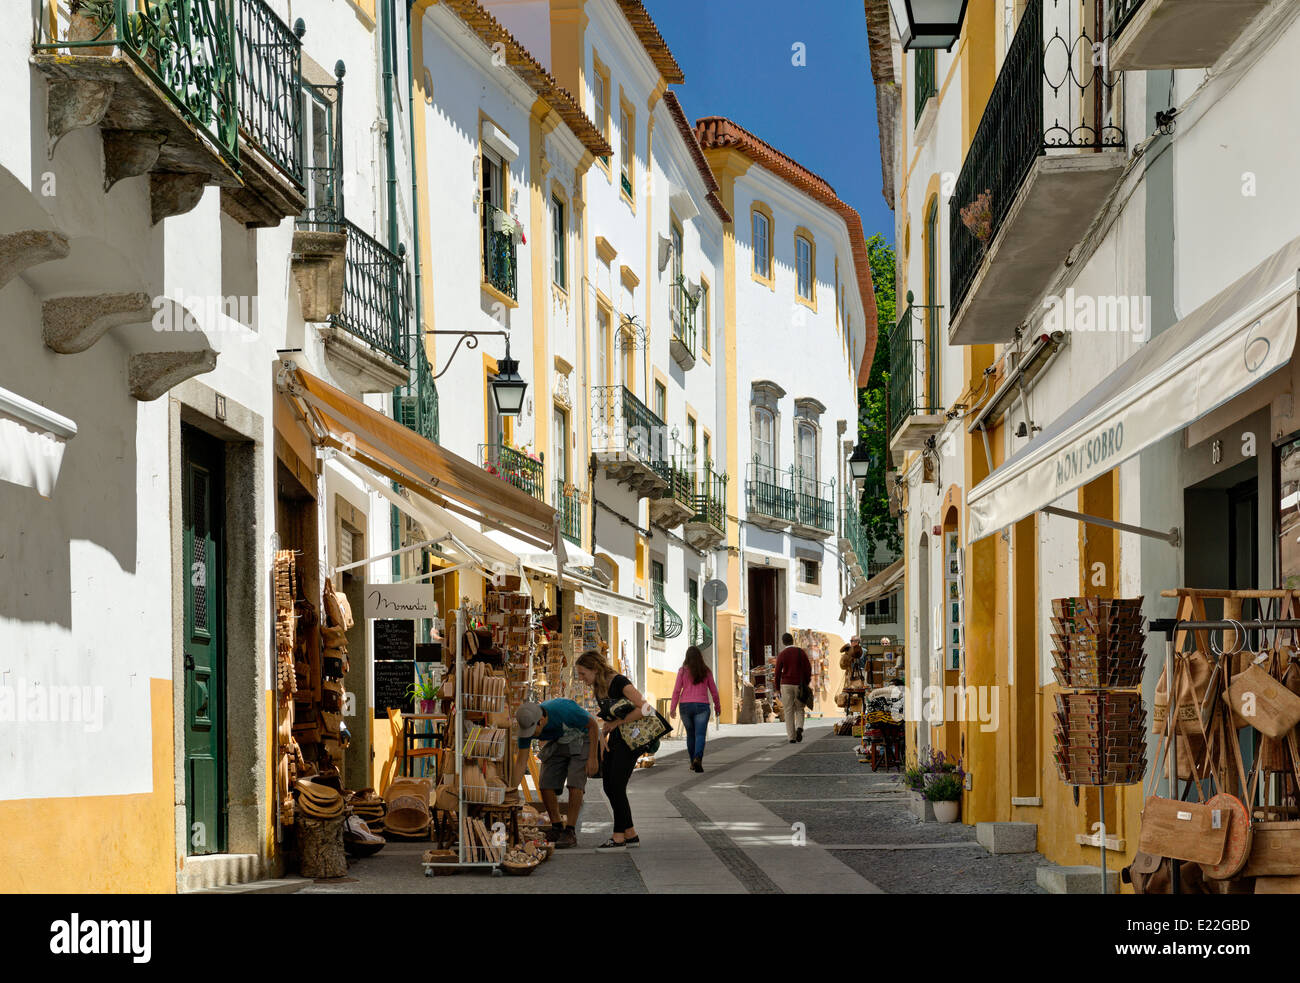 Portugal, Alentejo, Évora, einer engen Straße mit handwerklichen Geschäften gesäumt Stockfoto